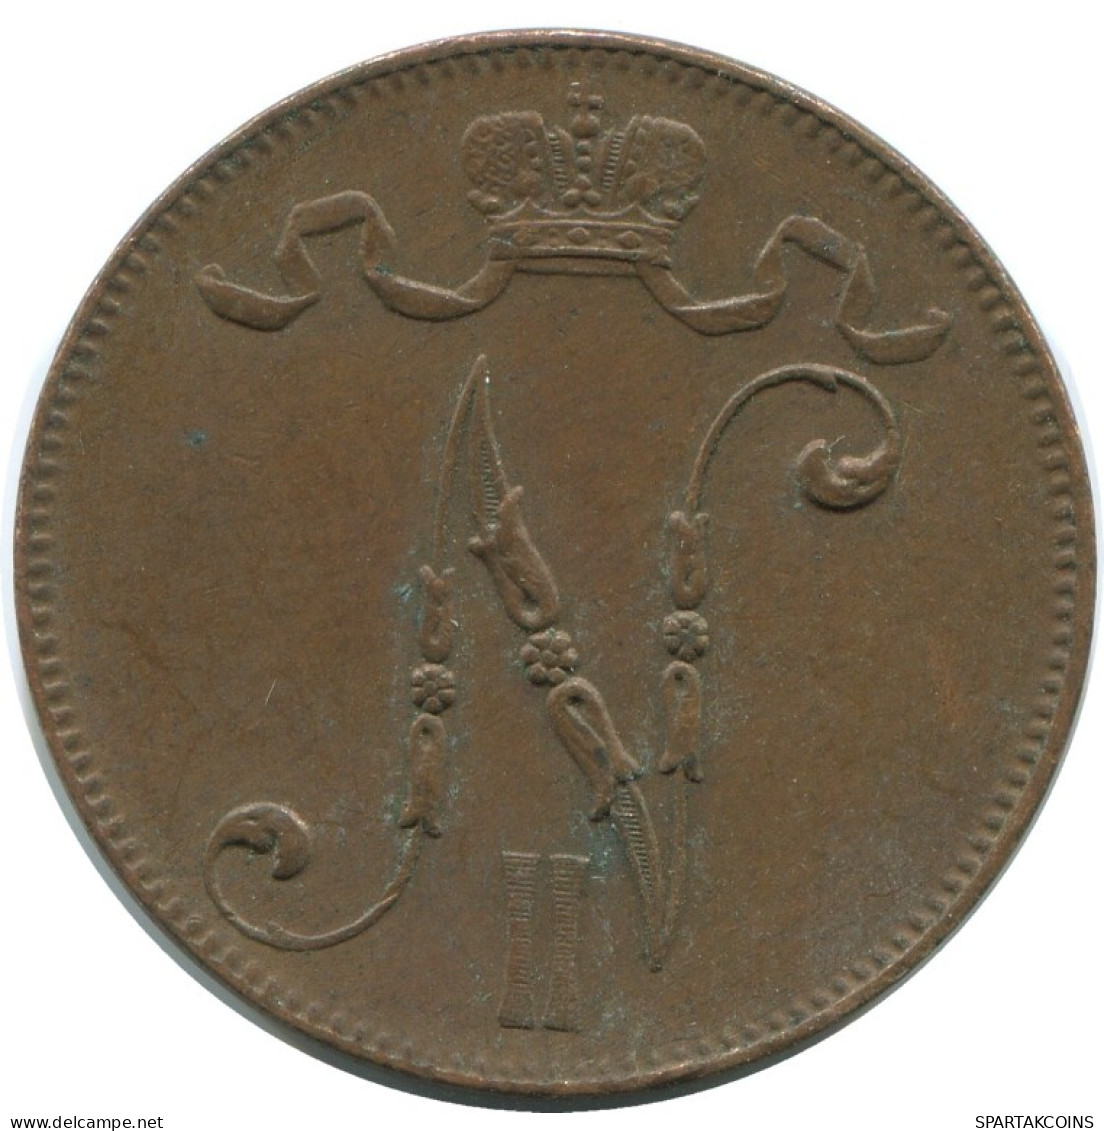 5 PENNIA 1916 FINLAND Coin RUSSIA EMPIRE #AB149.5.U.A - Finland